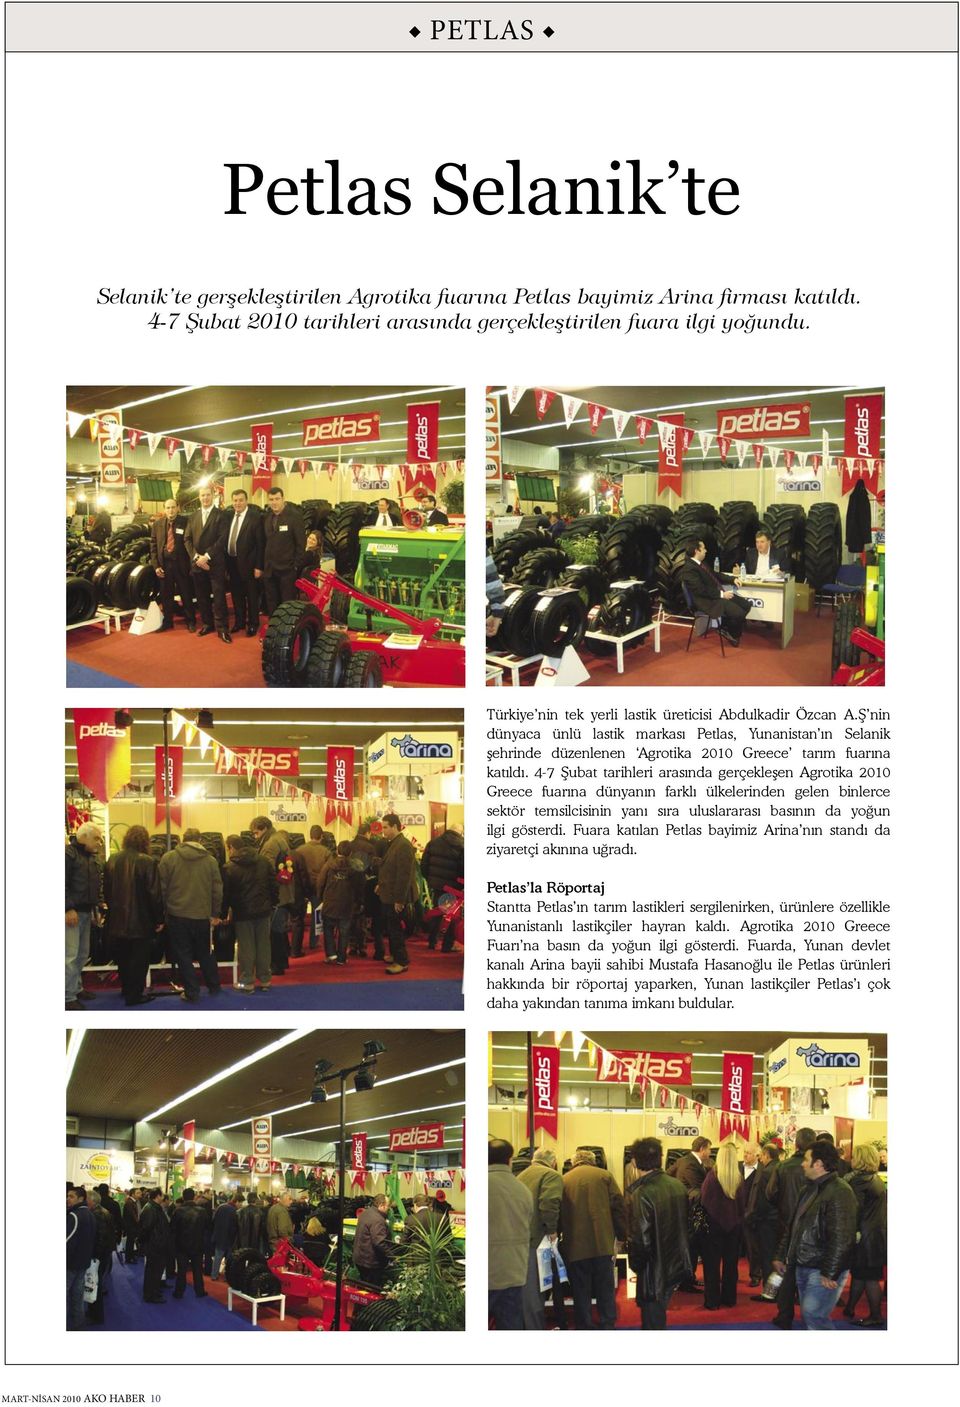 4-7 Şubat tarihleri arasında gerçekleşen Agrotika 2010 Greece fuarına dünyanın farklı ülkelerinden gelen binlerce sektör temsilcisinin yanı sıra uluslararası basının da yoğun ilgi gösterdi.